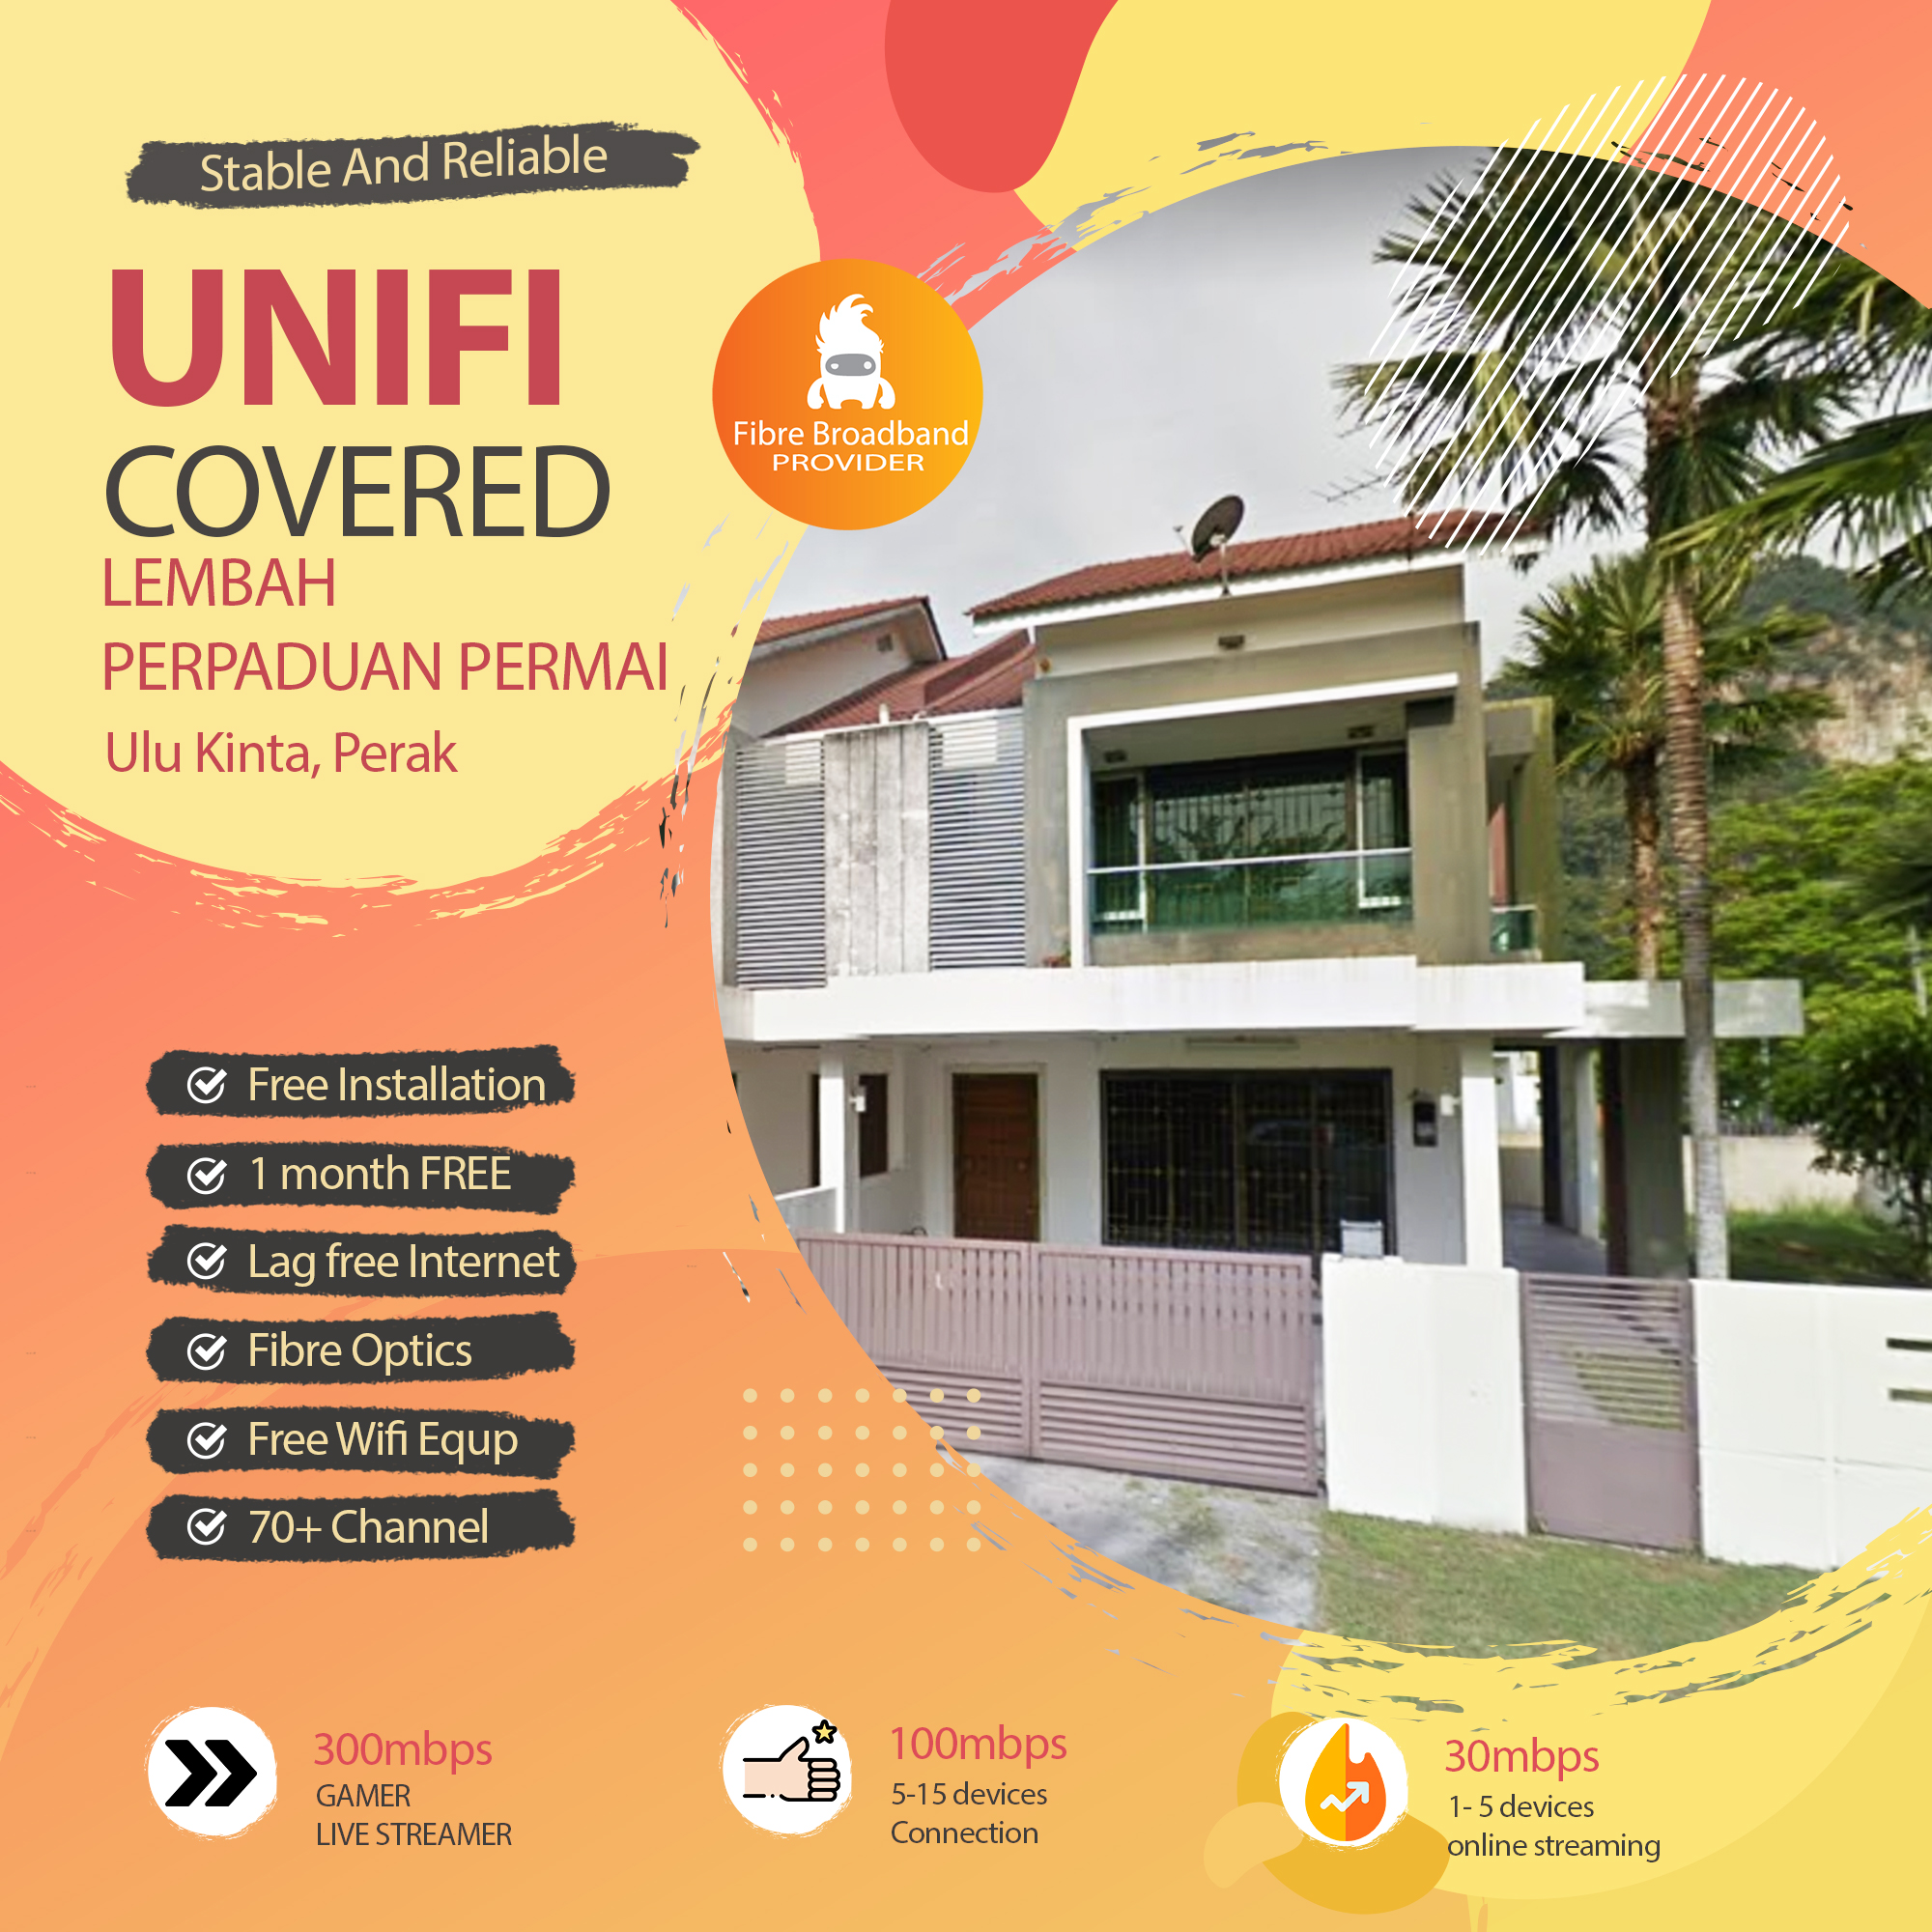 Unifi Ulu Kinta coverage – fibre broadband internet plan Lembah Perpaduan Permai,Ulu Kinta Perak